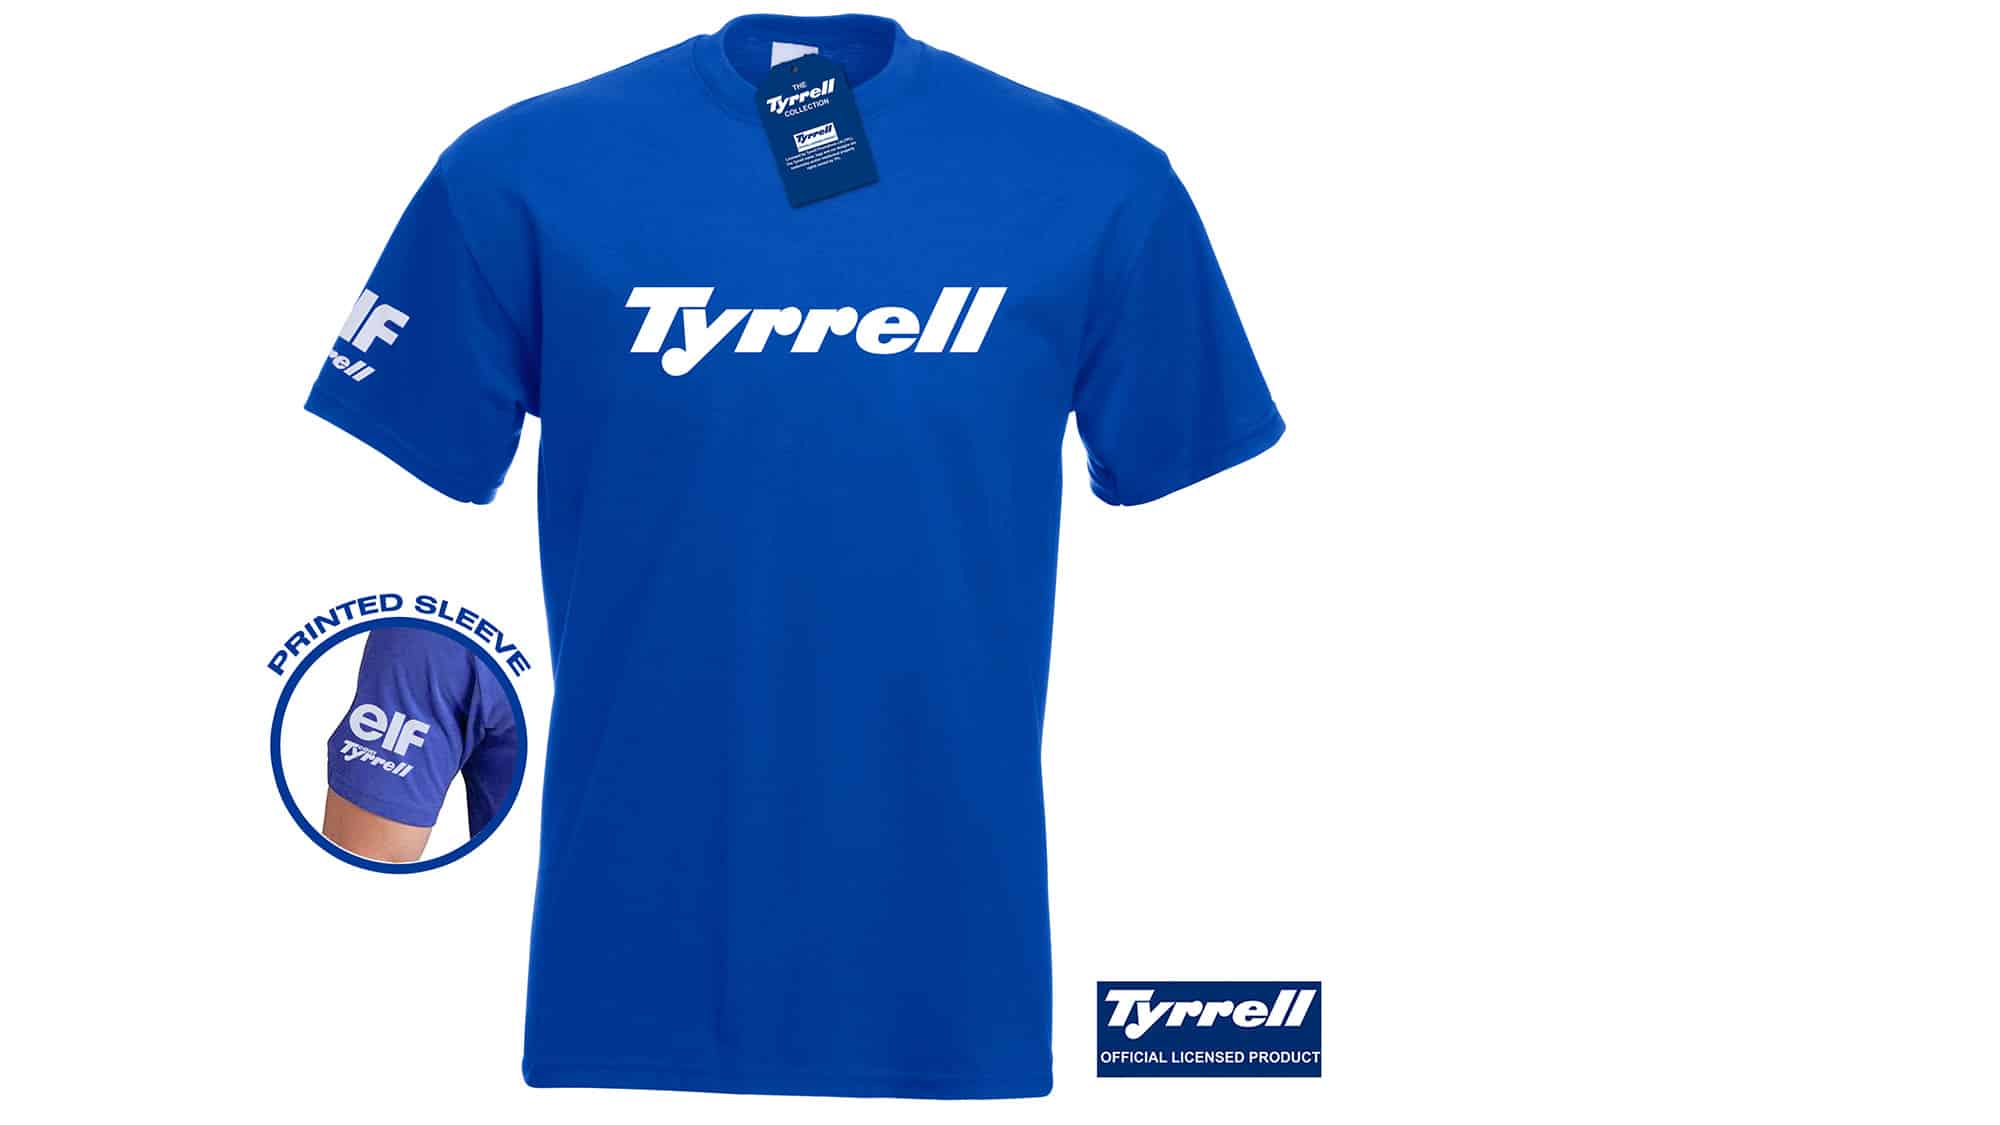 Tyrrell t-shirt